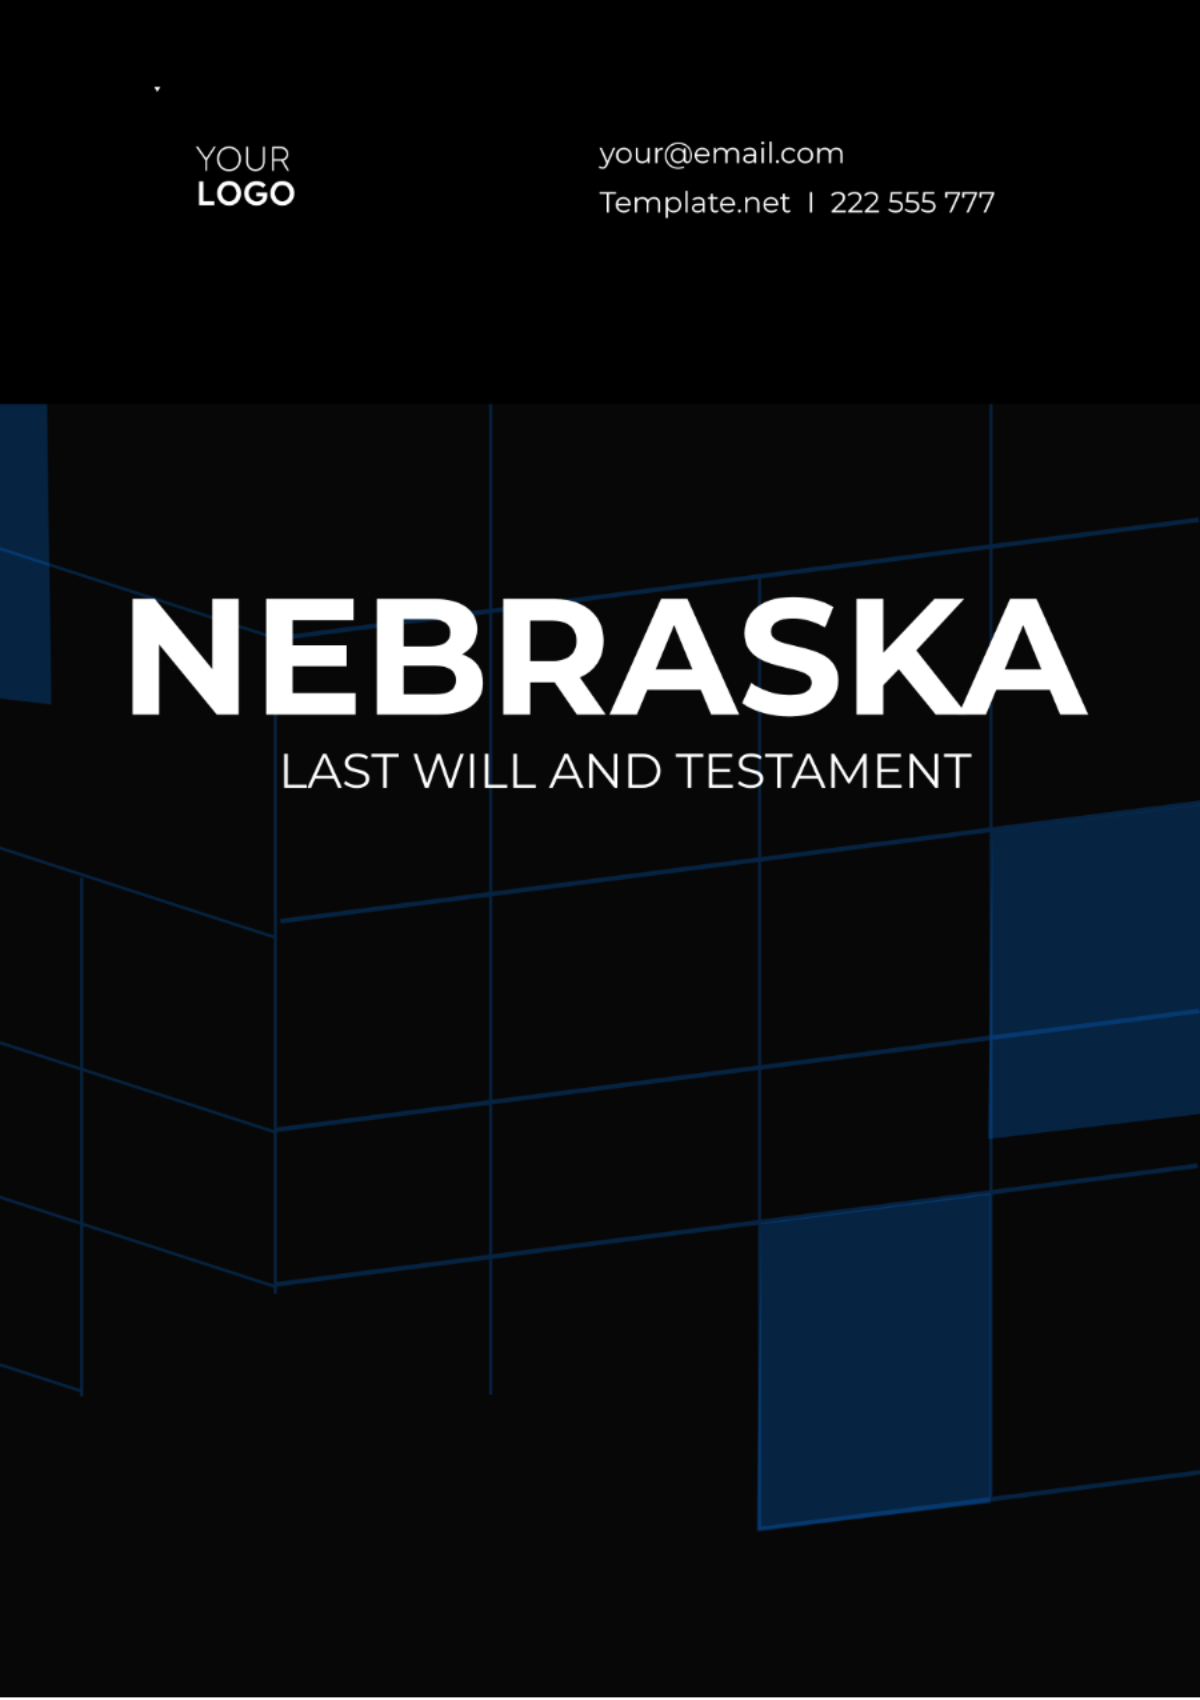 Nebraska Last Will and Testament Template